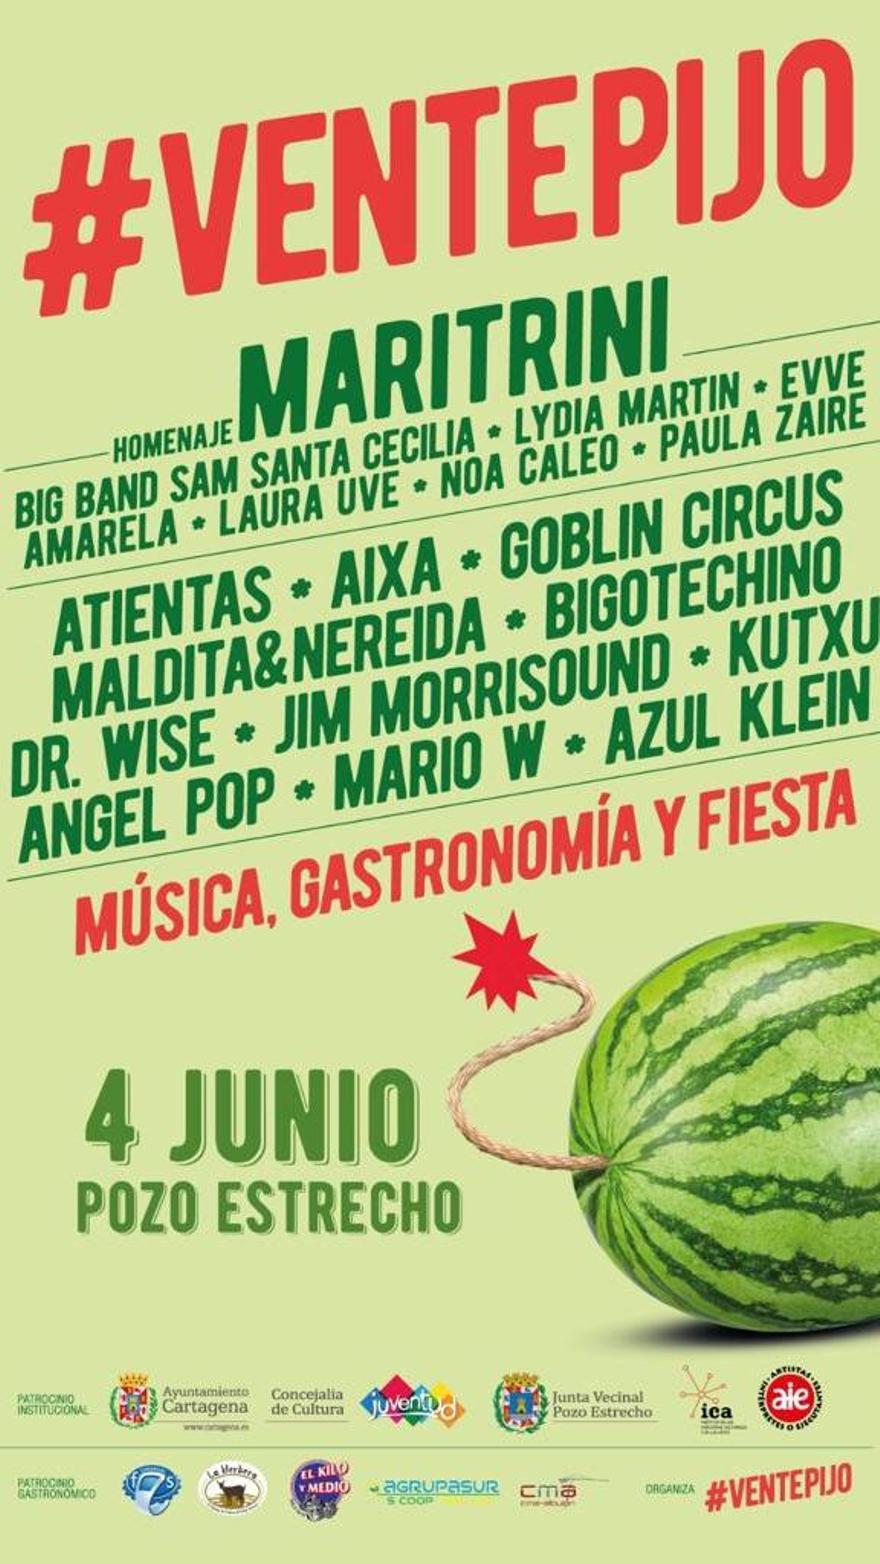 Cartel del festival #Ventepijo